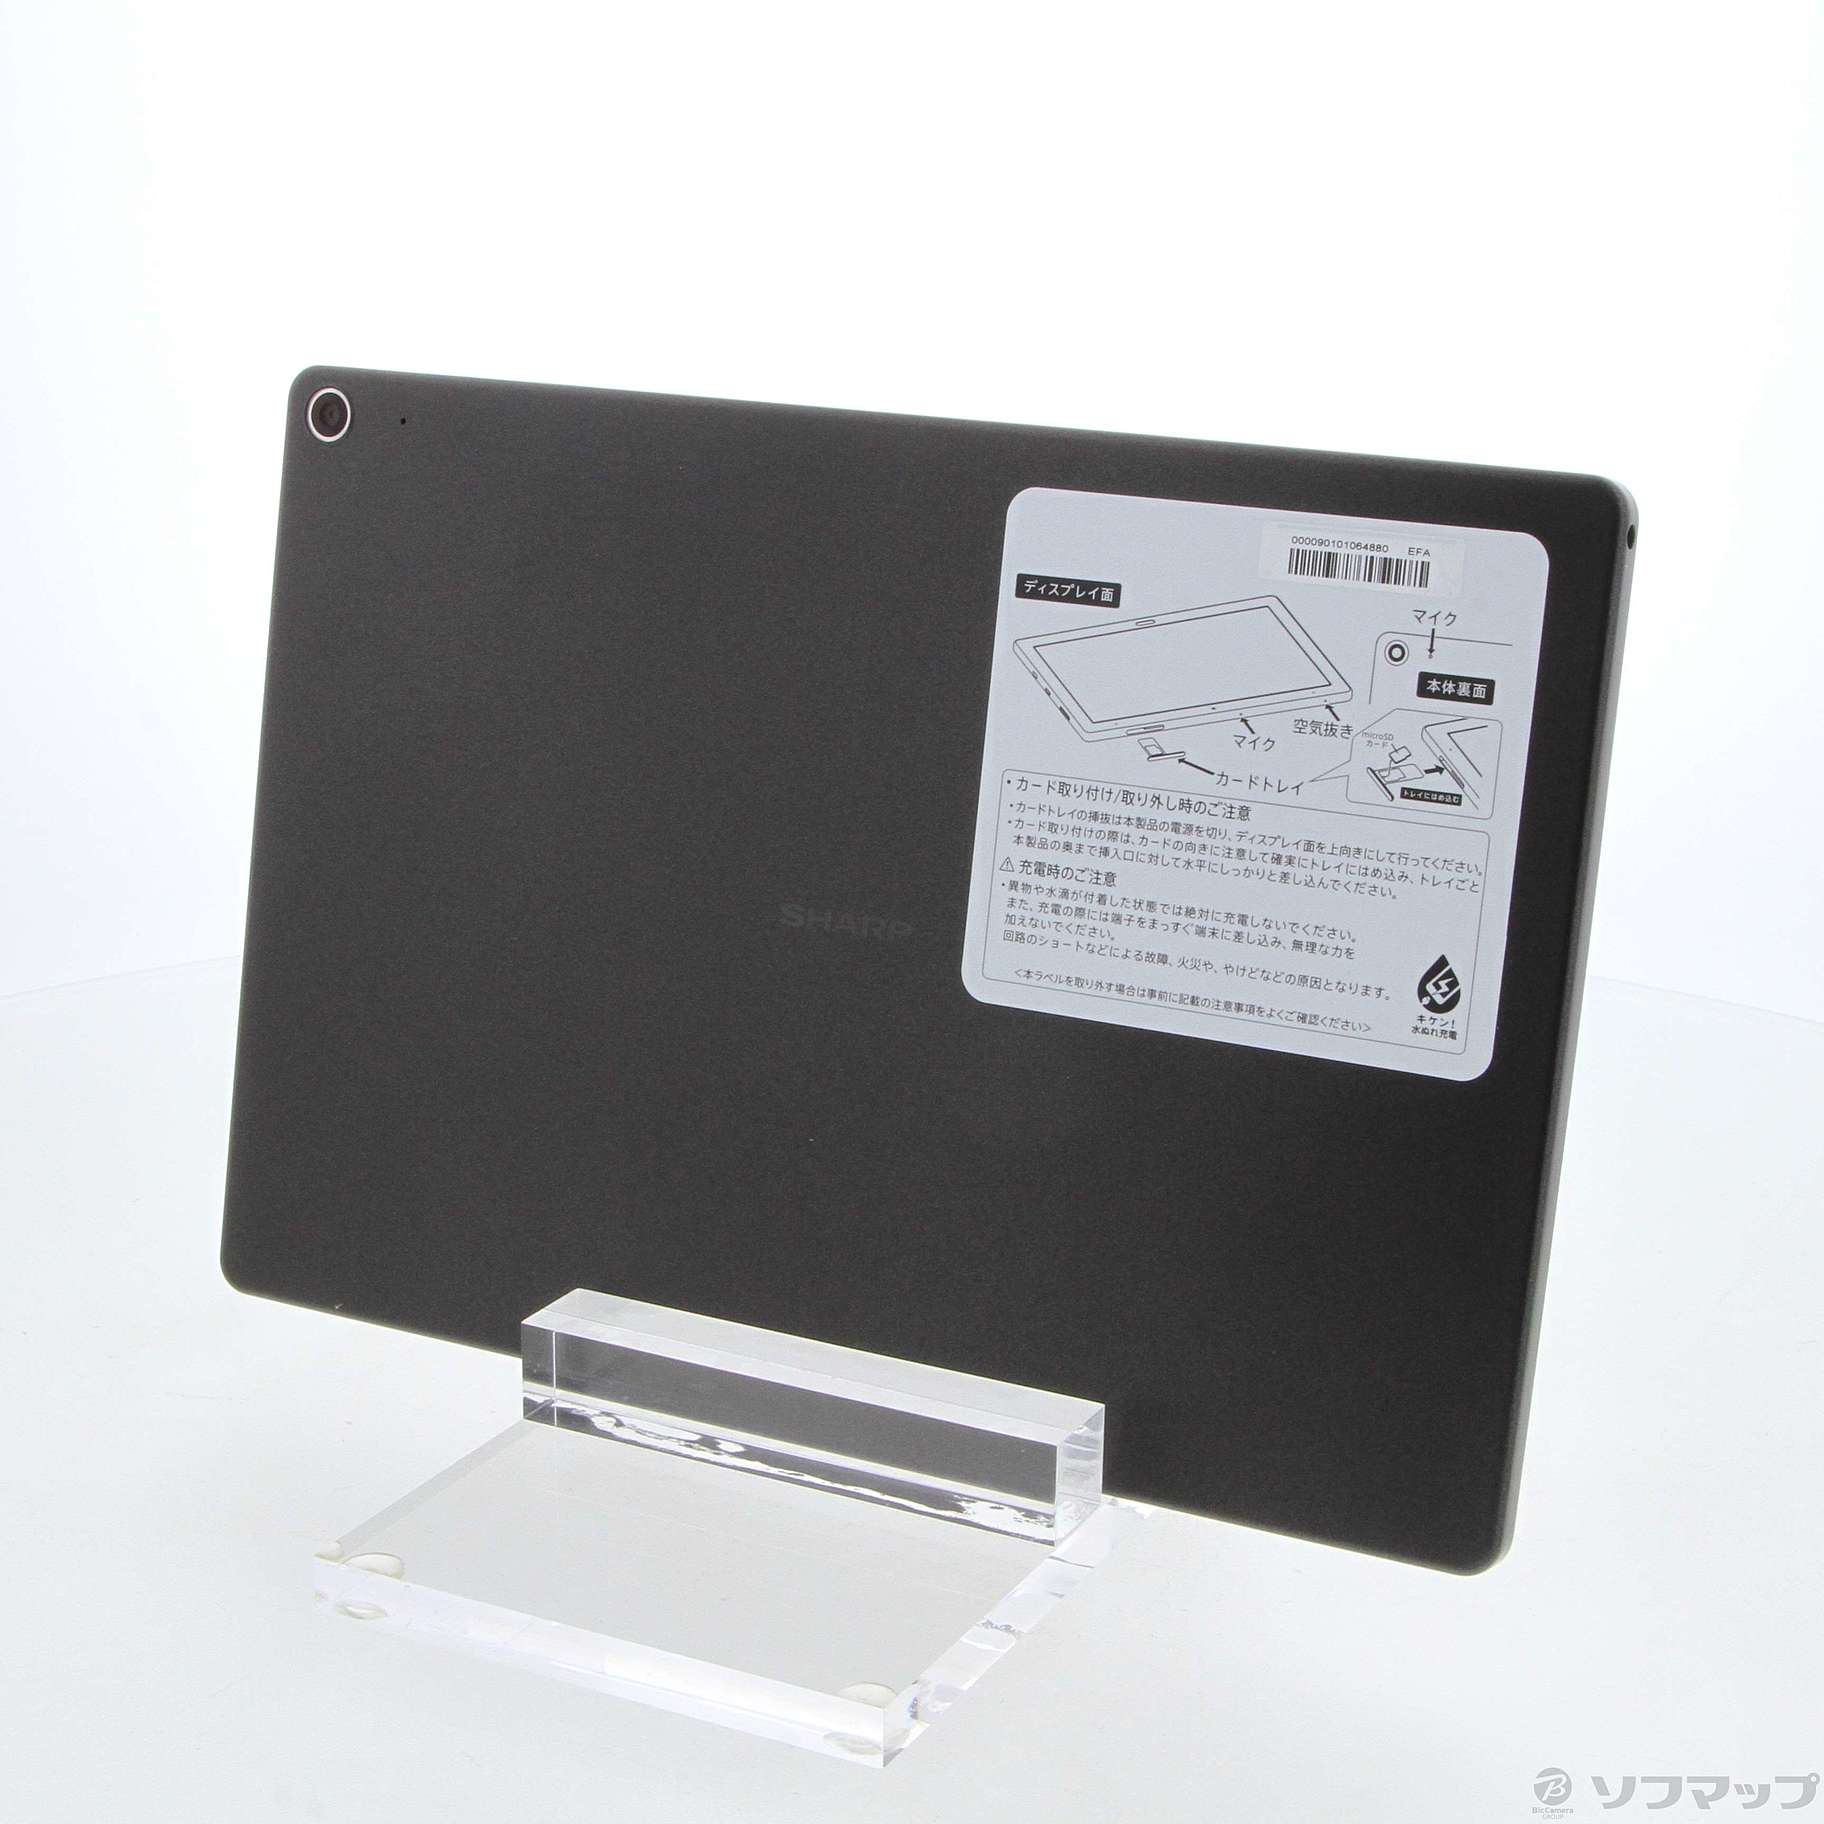 SHARP SH-T01  ロボホン専用タブレットPC/タブレット